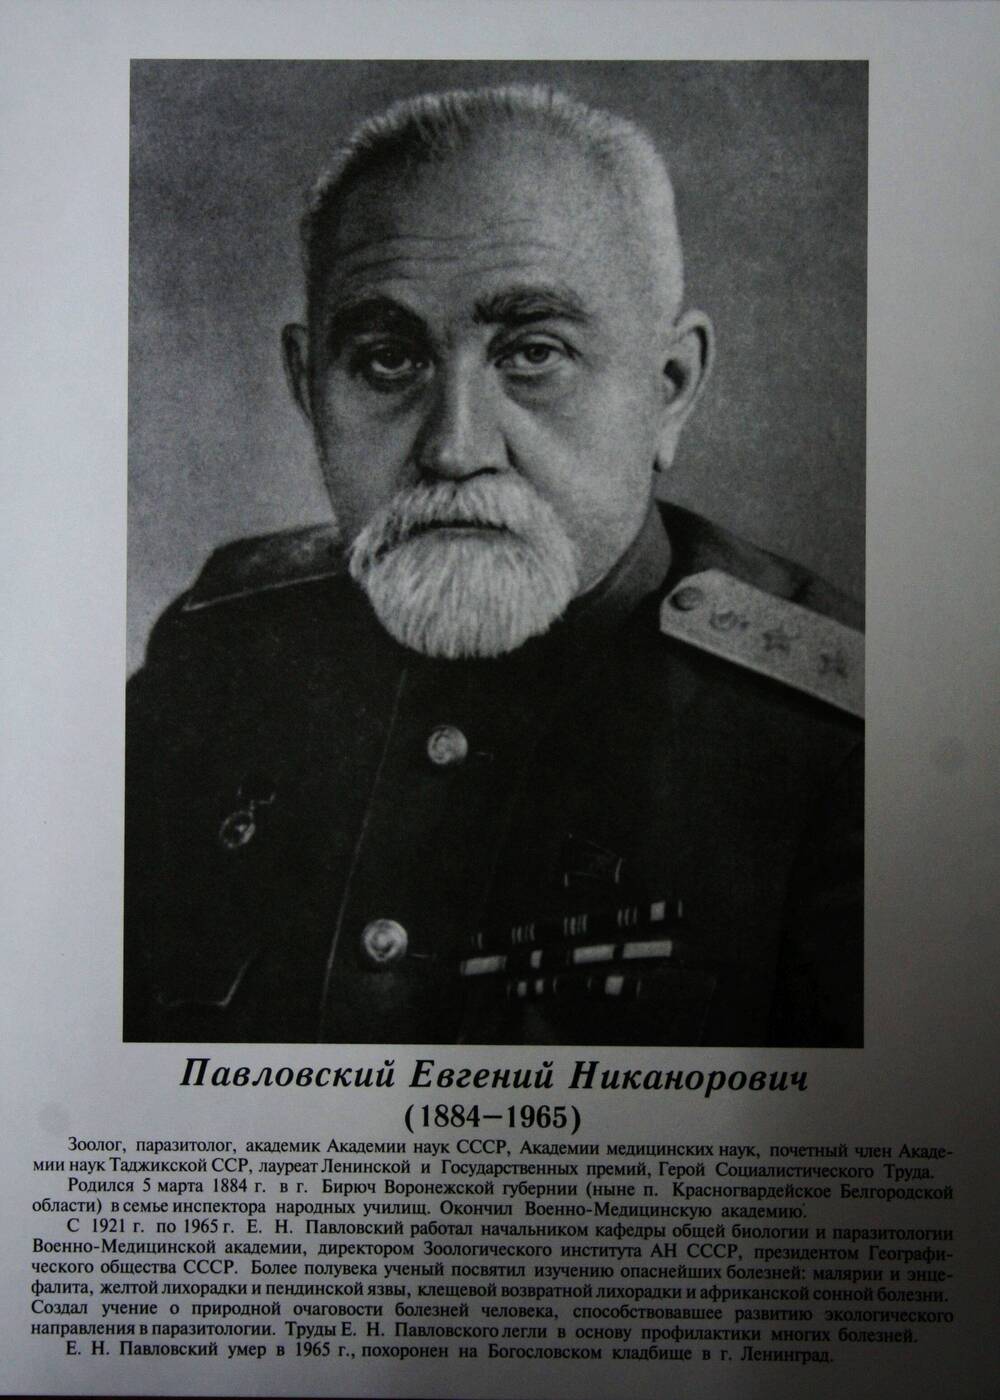 Плакат (фотопортрет) из комплекта Галерея славных имен Белгородчины. Павловский Евгений Никанорович (1884-1965).